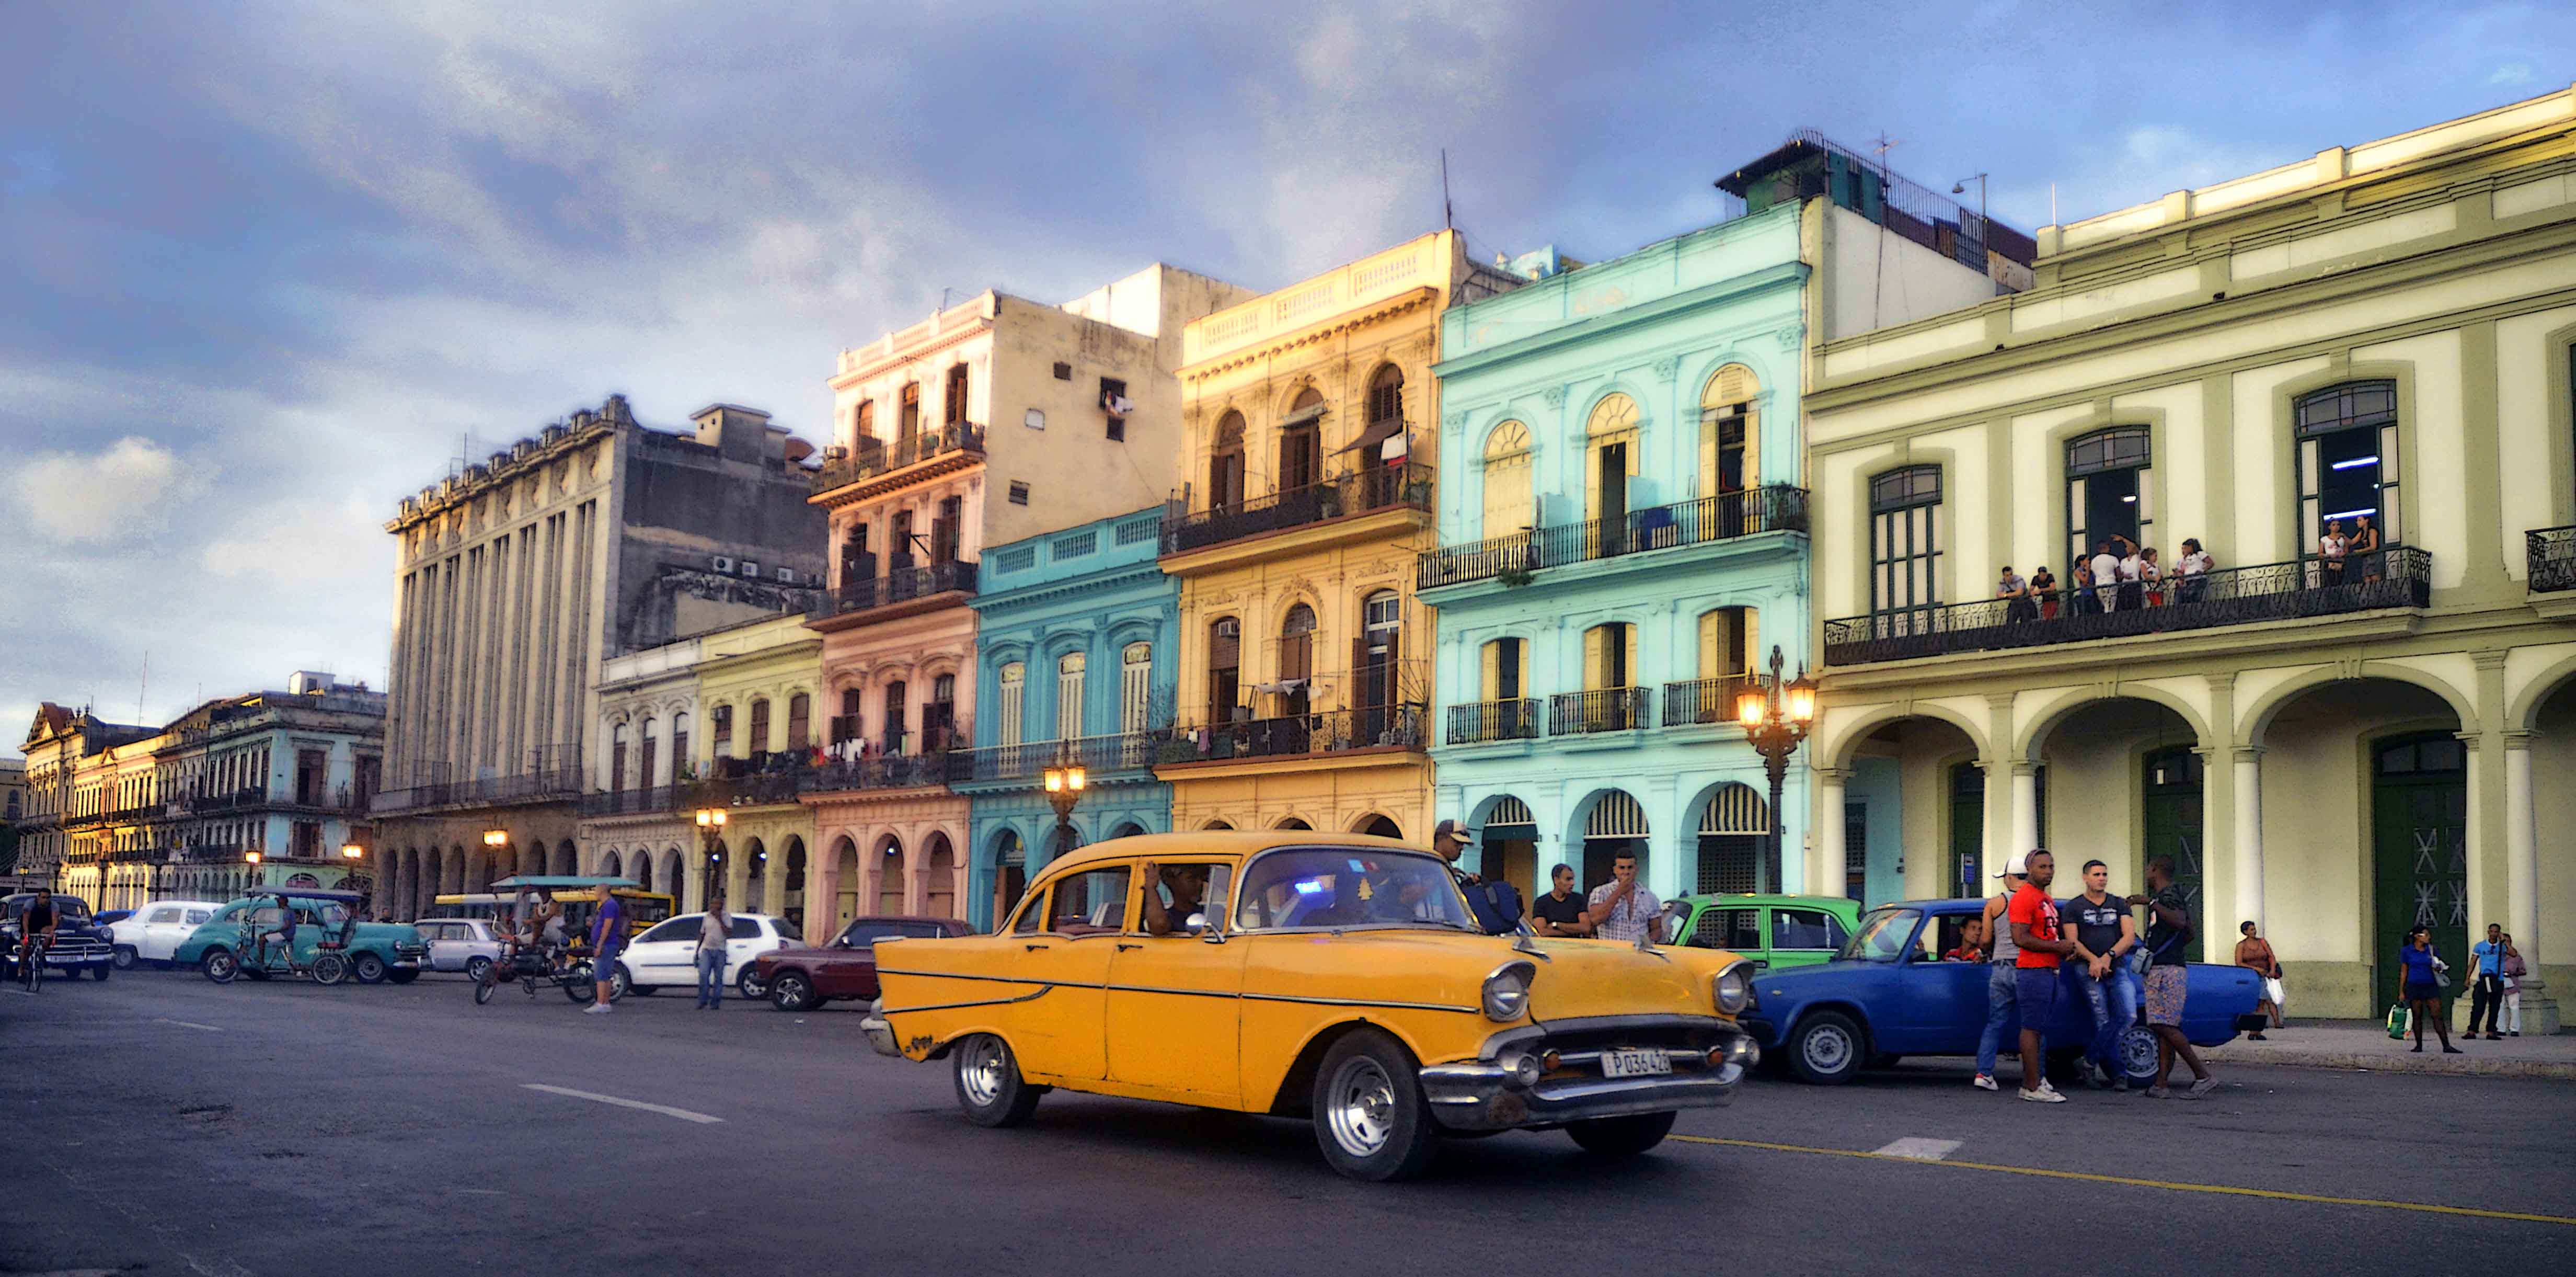 Foto archivo. La Habana.